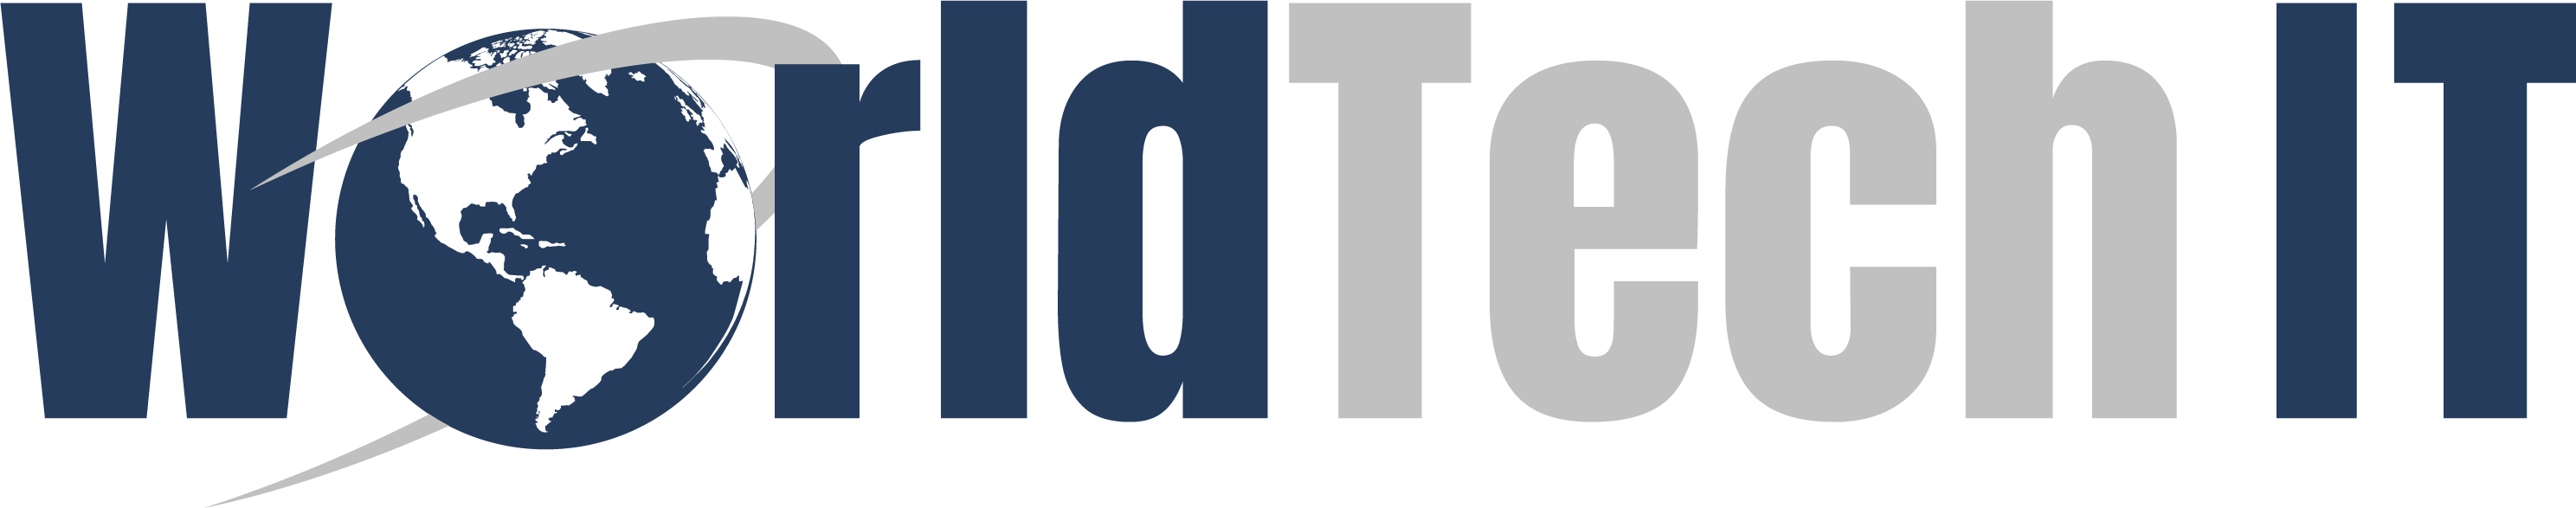 WorldTech IT logo